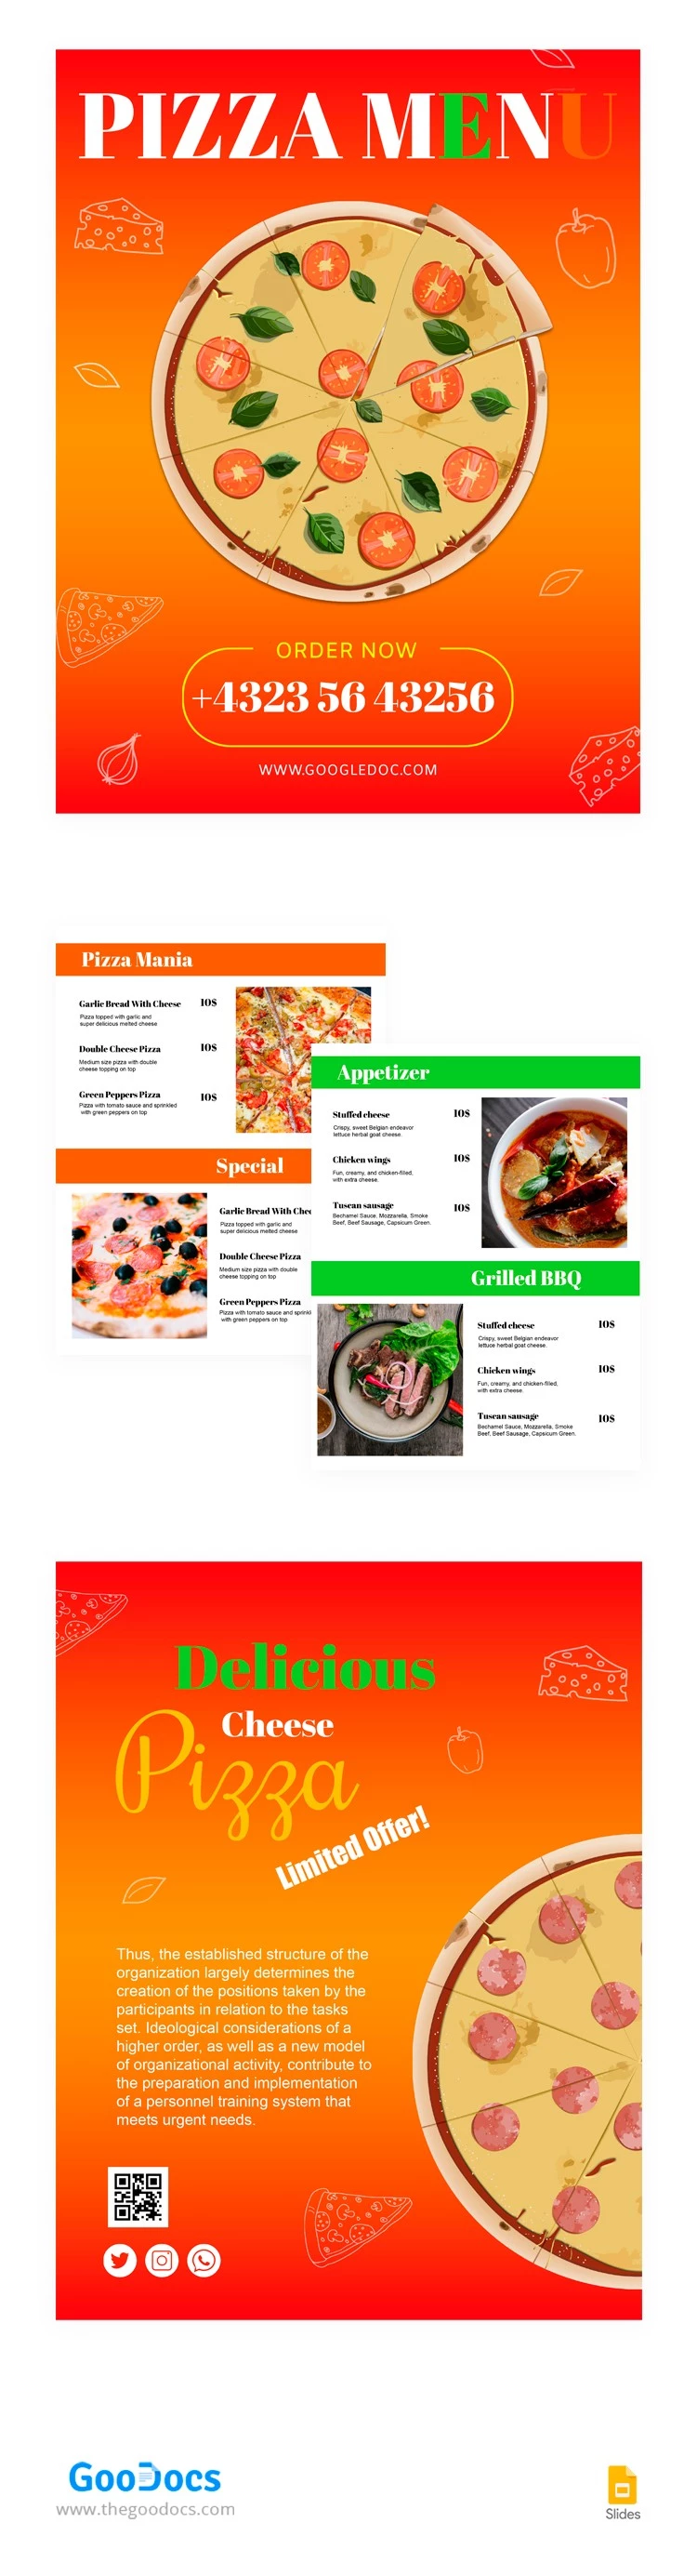 Menu do Restaurante de Pizza Italiana - free Google Docs Template - 10063587